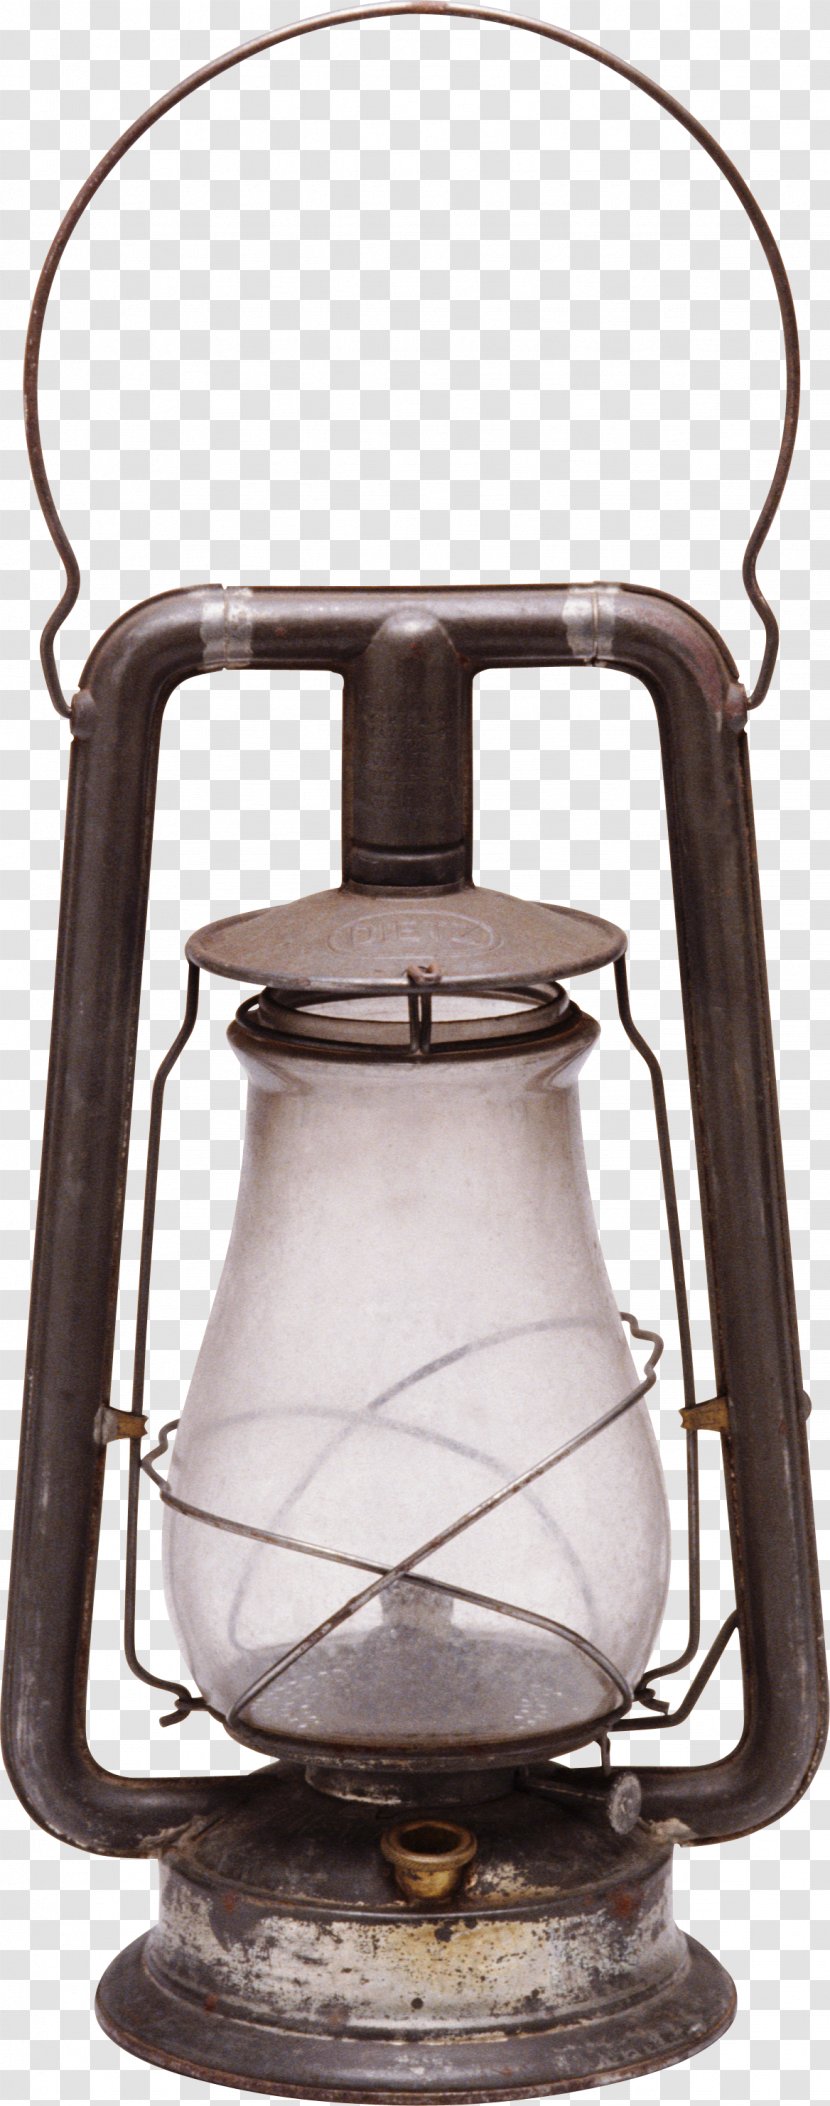 Light Oil Lamp Kerosene - Lantern Transparent PNG